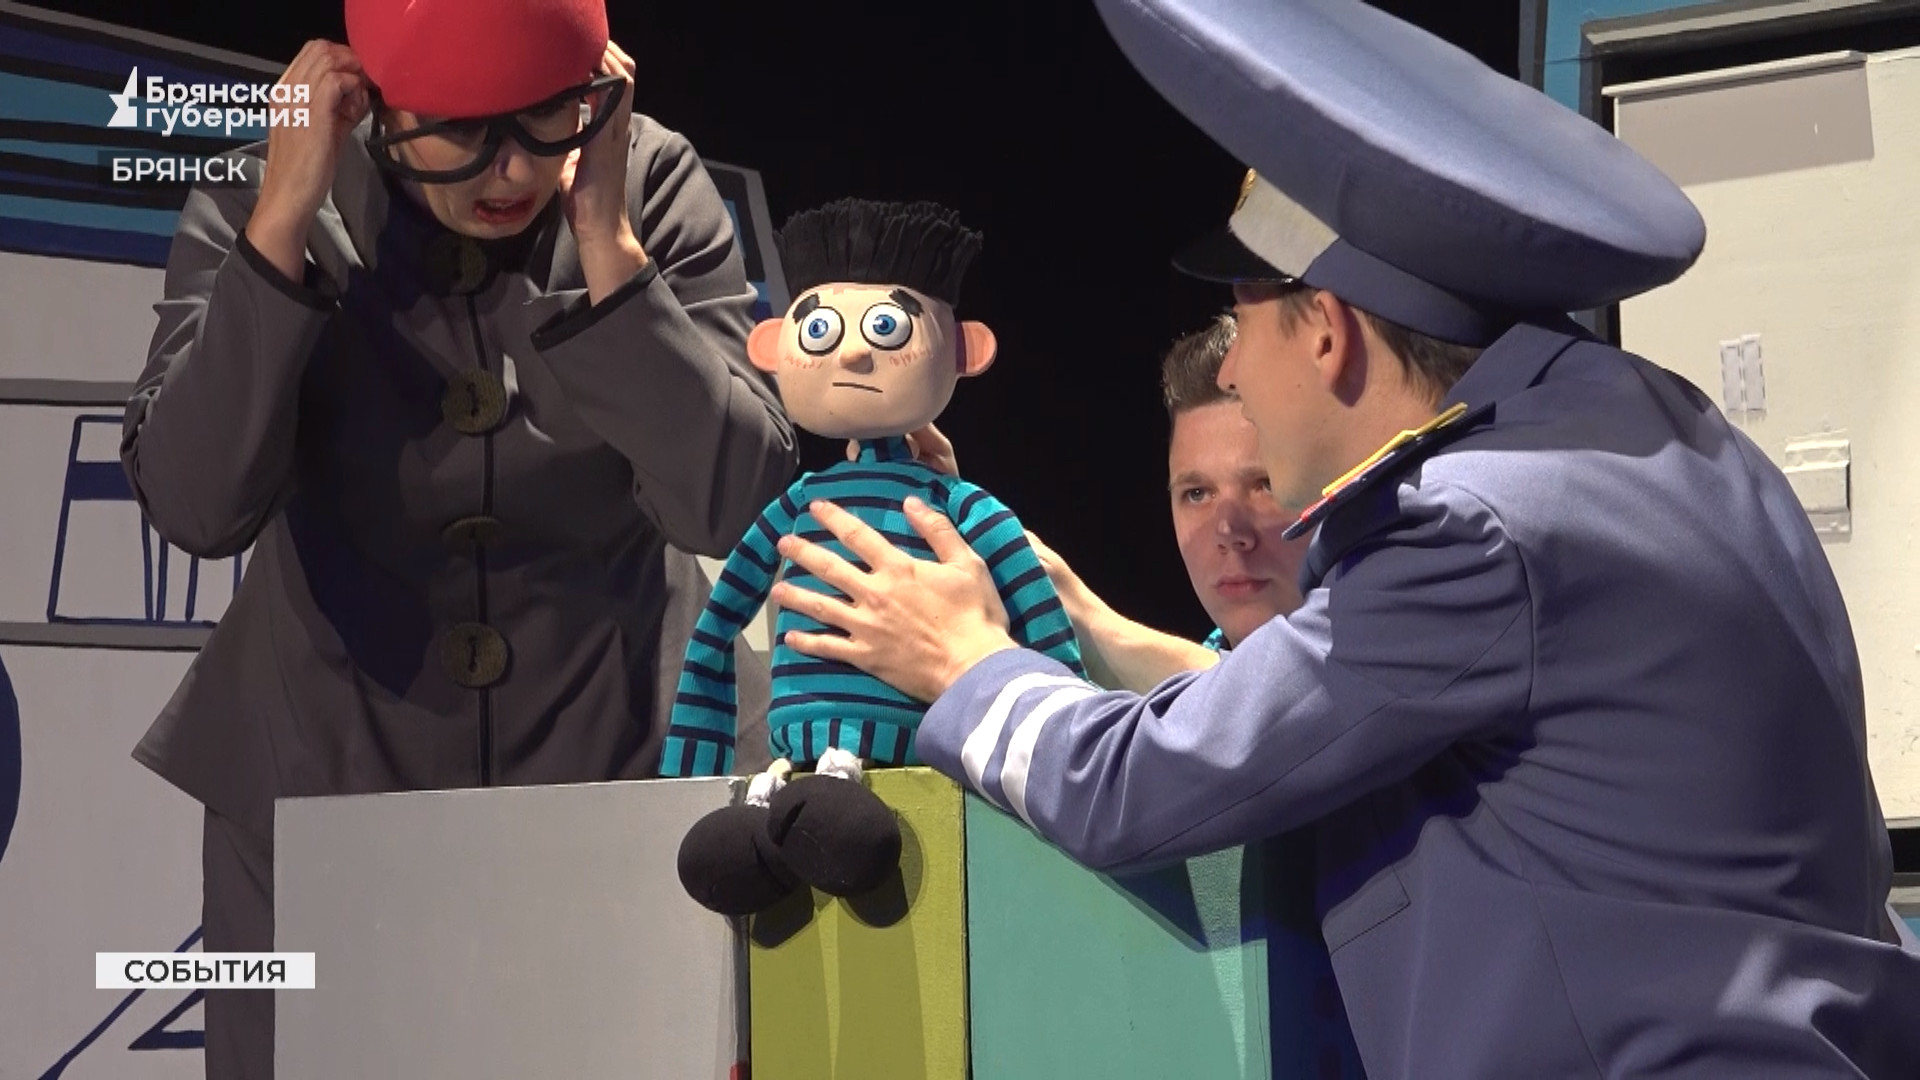 Культурно-познавательная премьера про мальчика Андрейку состоялась в Брянском театре кукол